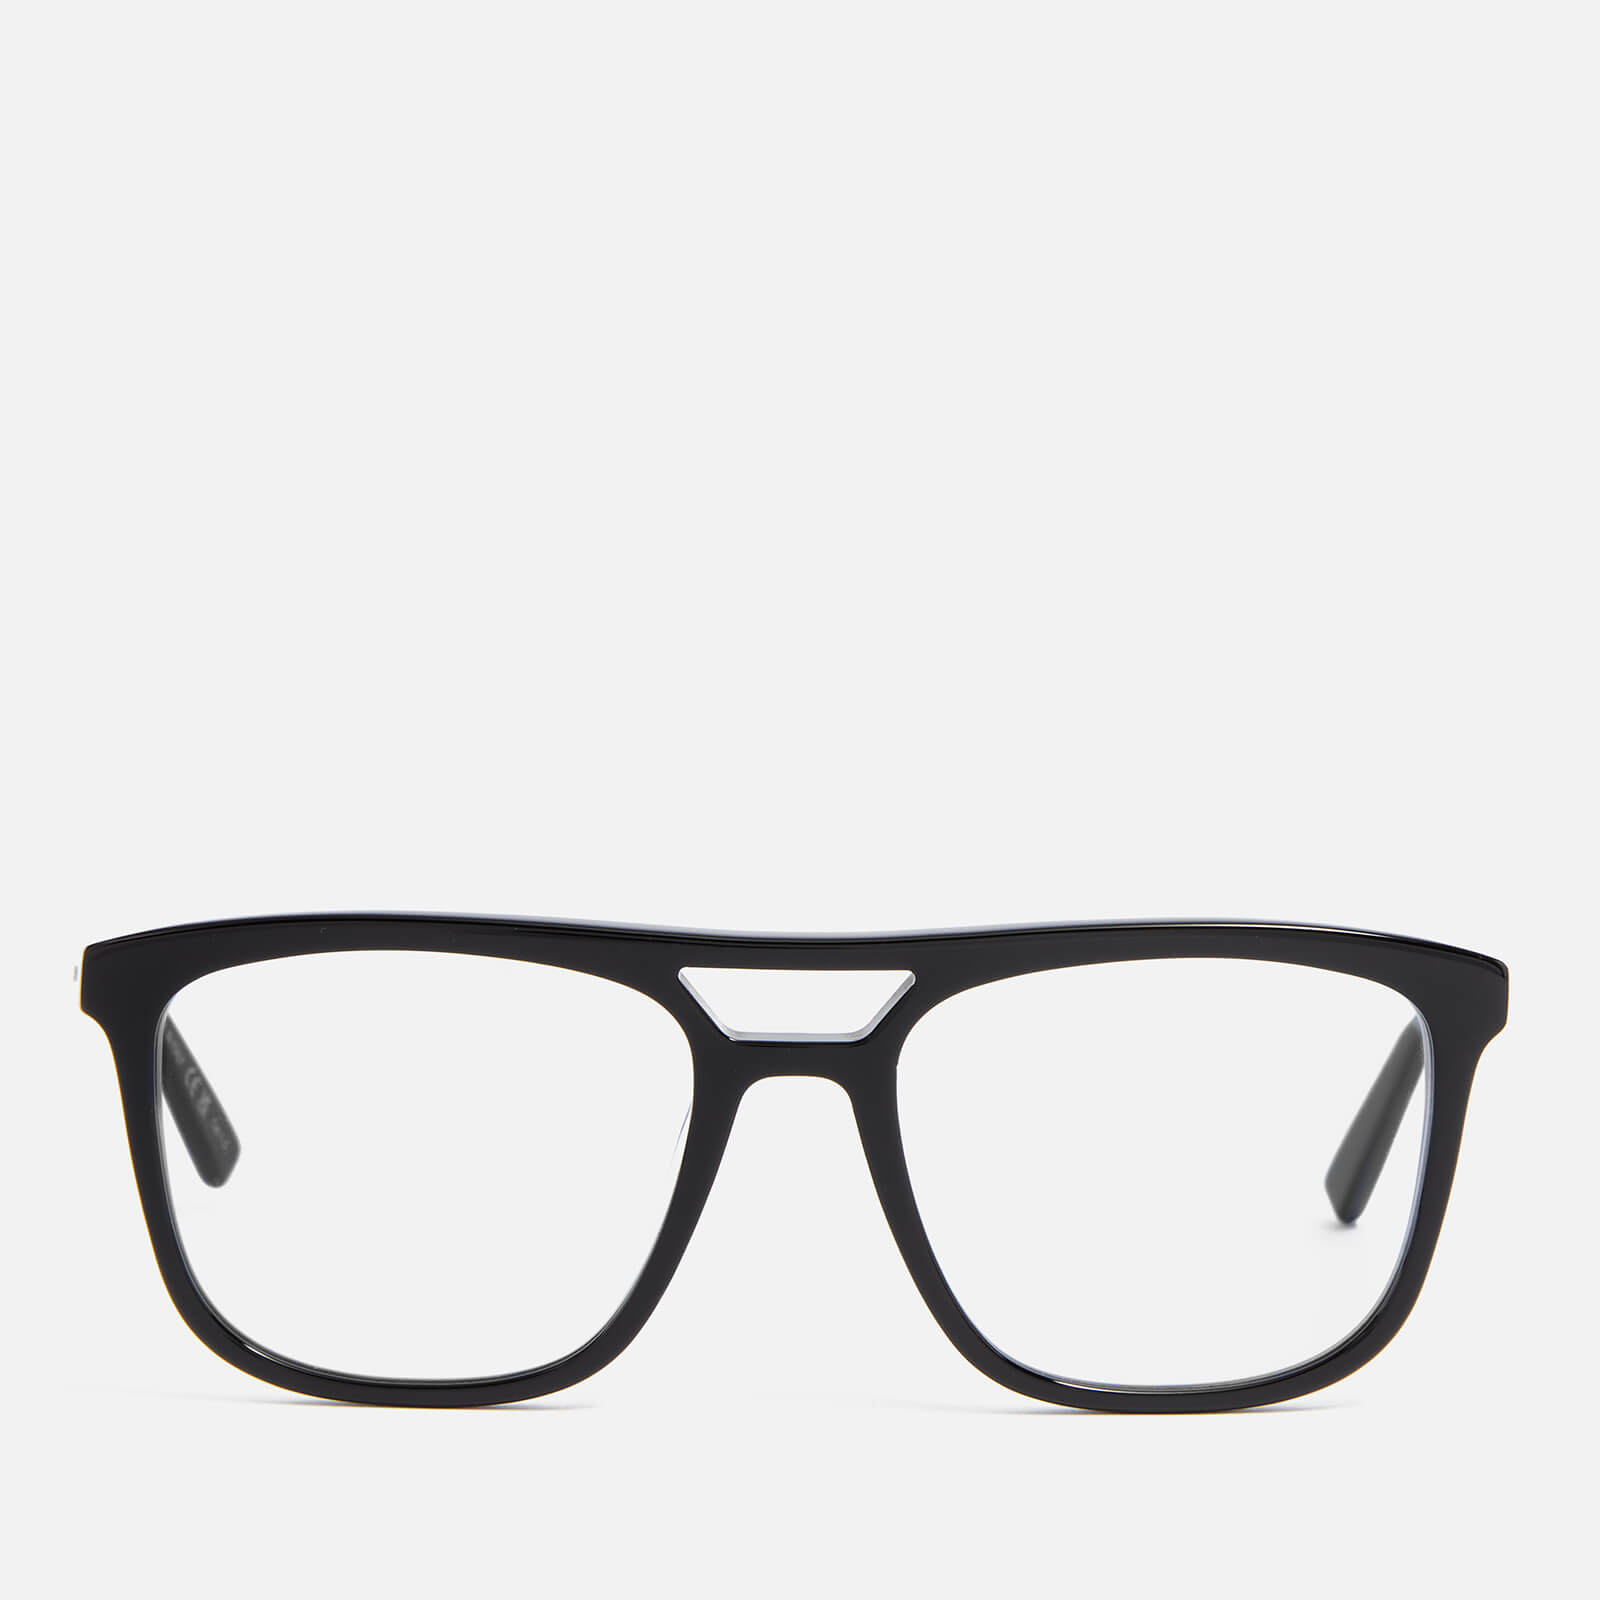 Saint Laurent Men's Metal Glasses - Black/Black/Grey